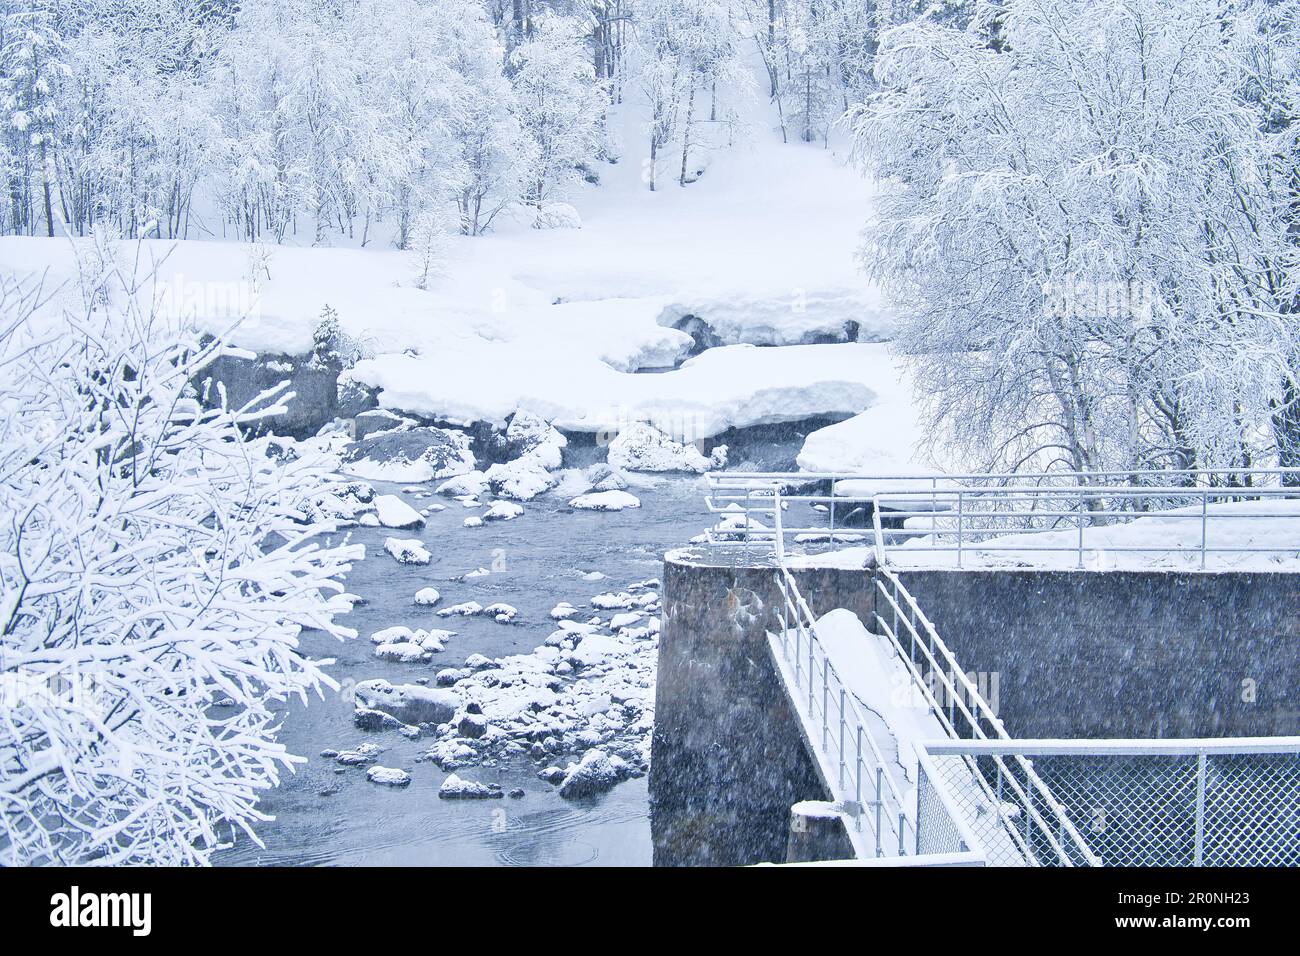 Paysage d'hiver en Scandinavie. Avec des arbres couverts de neige par un petit ruisseau. Photo de paysage du nord Banque D'Images